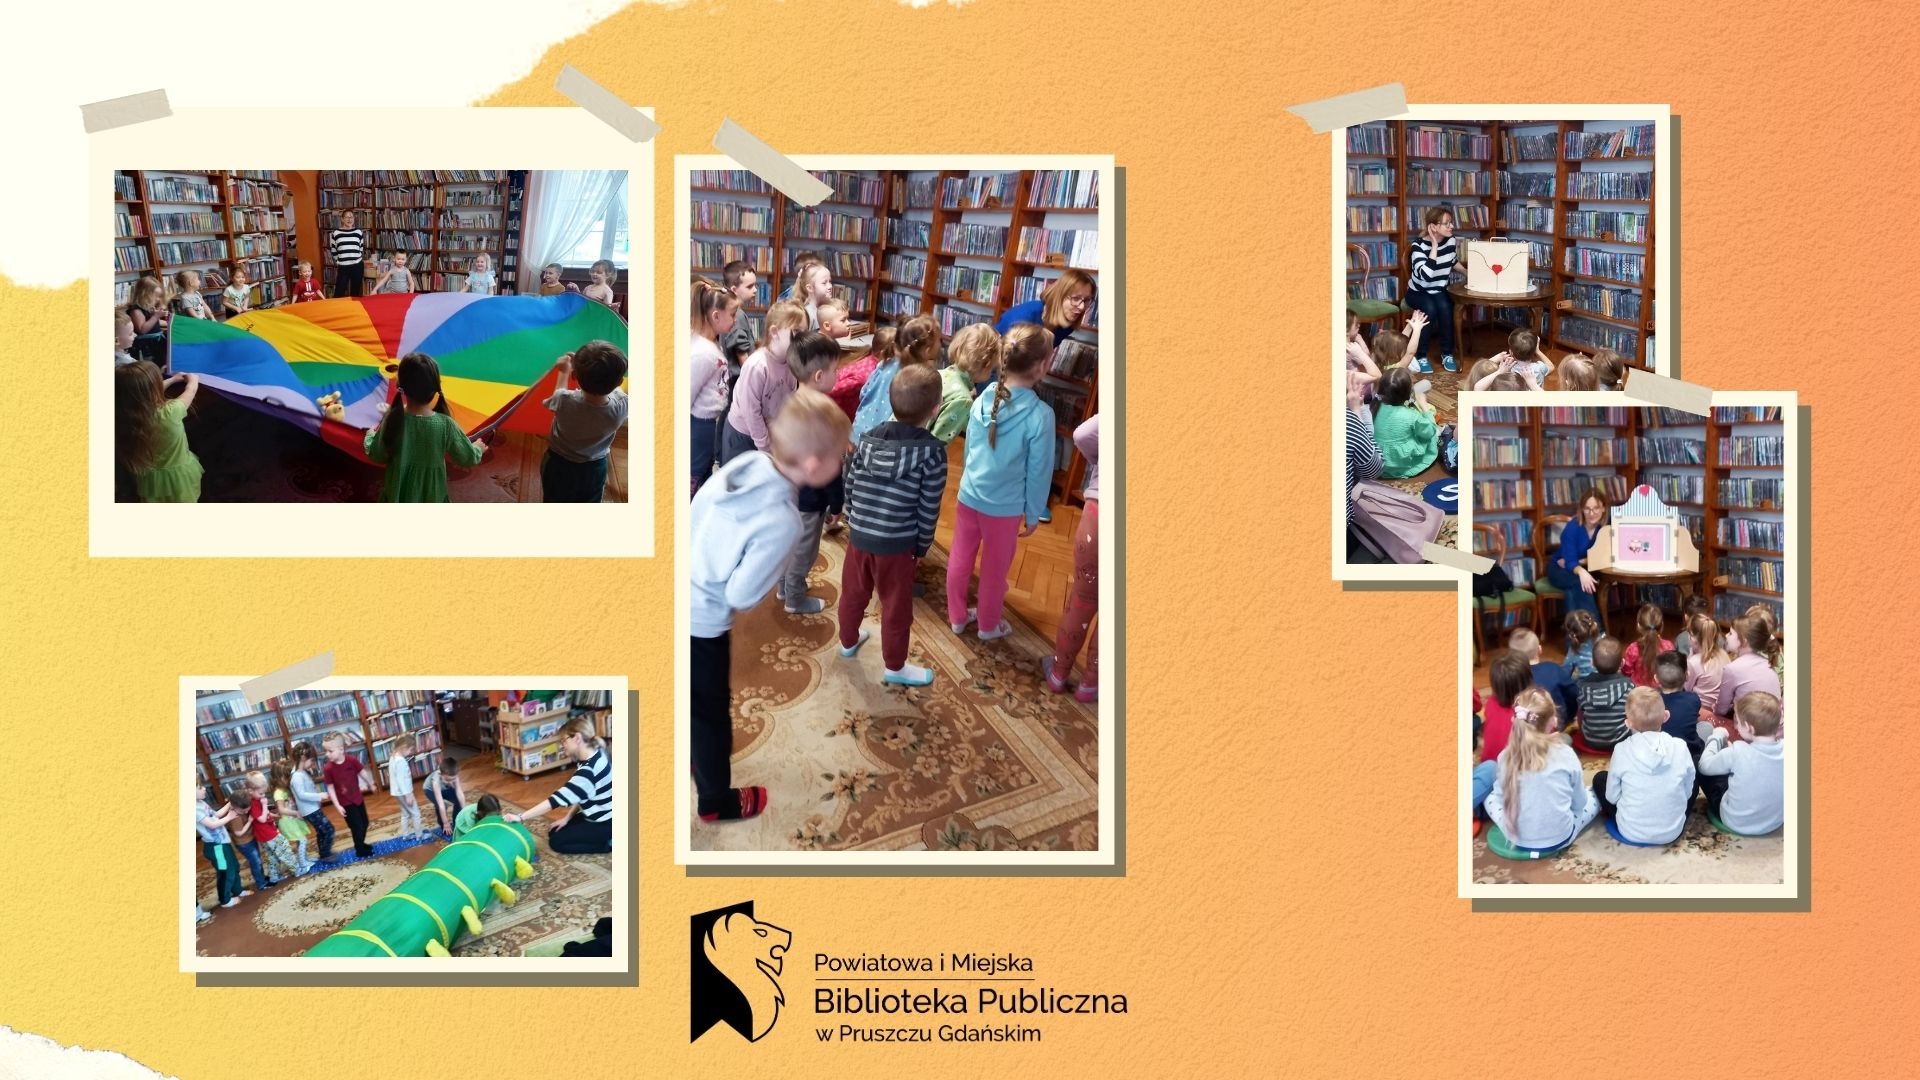 a pomarańczowym tle kolaż 5 zdjęć przedstawiących dzieci i bibliotekarkę podczas lekcji bibliotecznej. Na zdjęciach dzieci siedzi i słuchają teatrzyku kamishibai, bawia się korlową chustą Klanzy oraz wchodzą do zielonego tunelu. Na dole logo biblioteki.